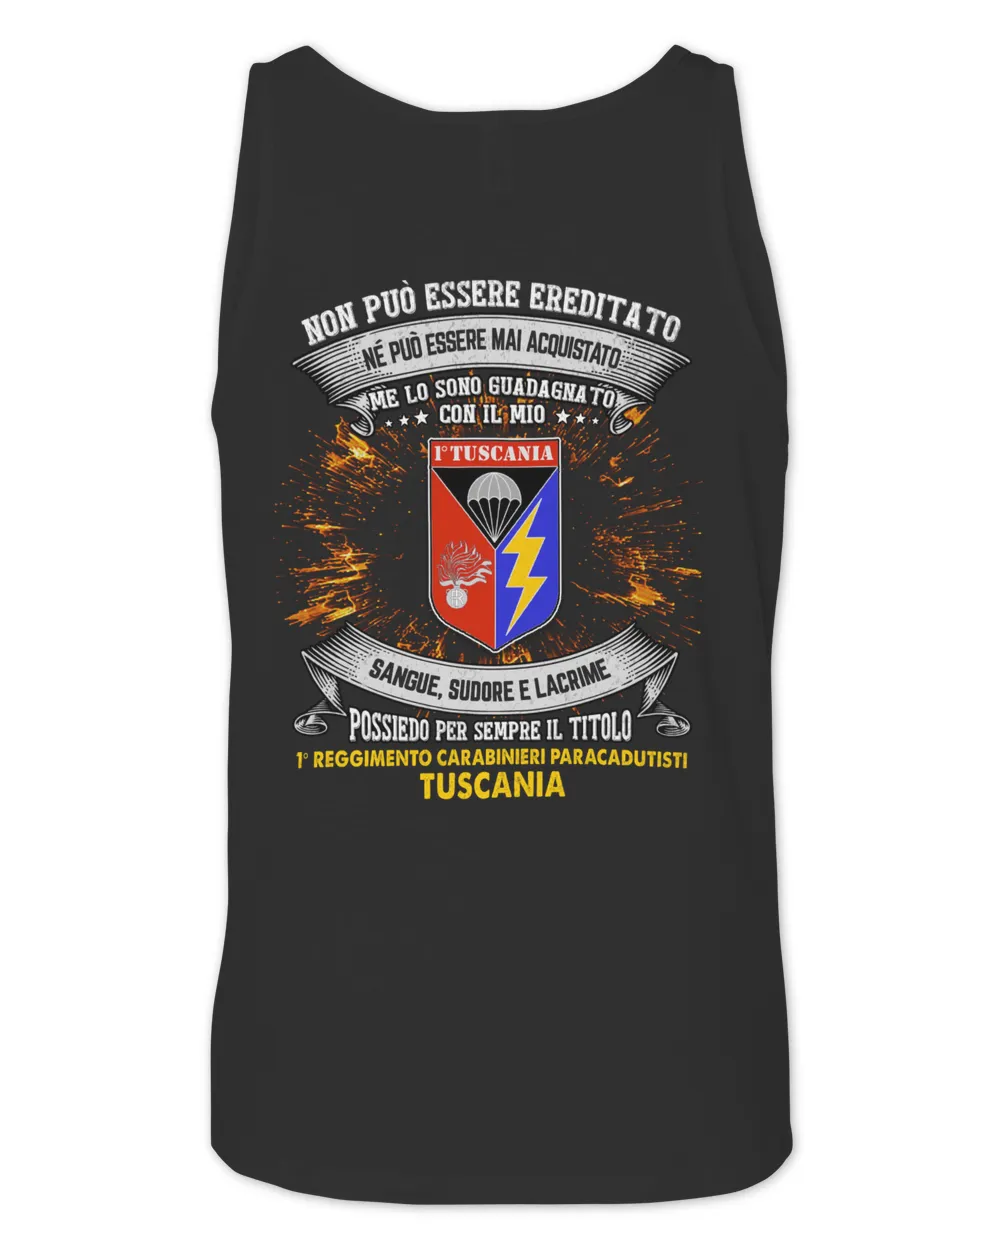 1° Reggimento Carabinieri Paracadutisti Tuscania